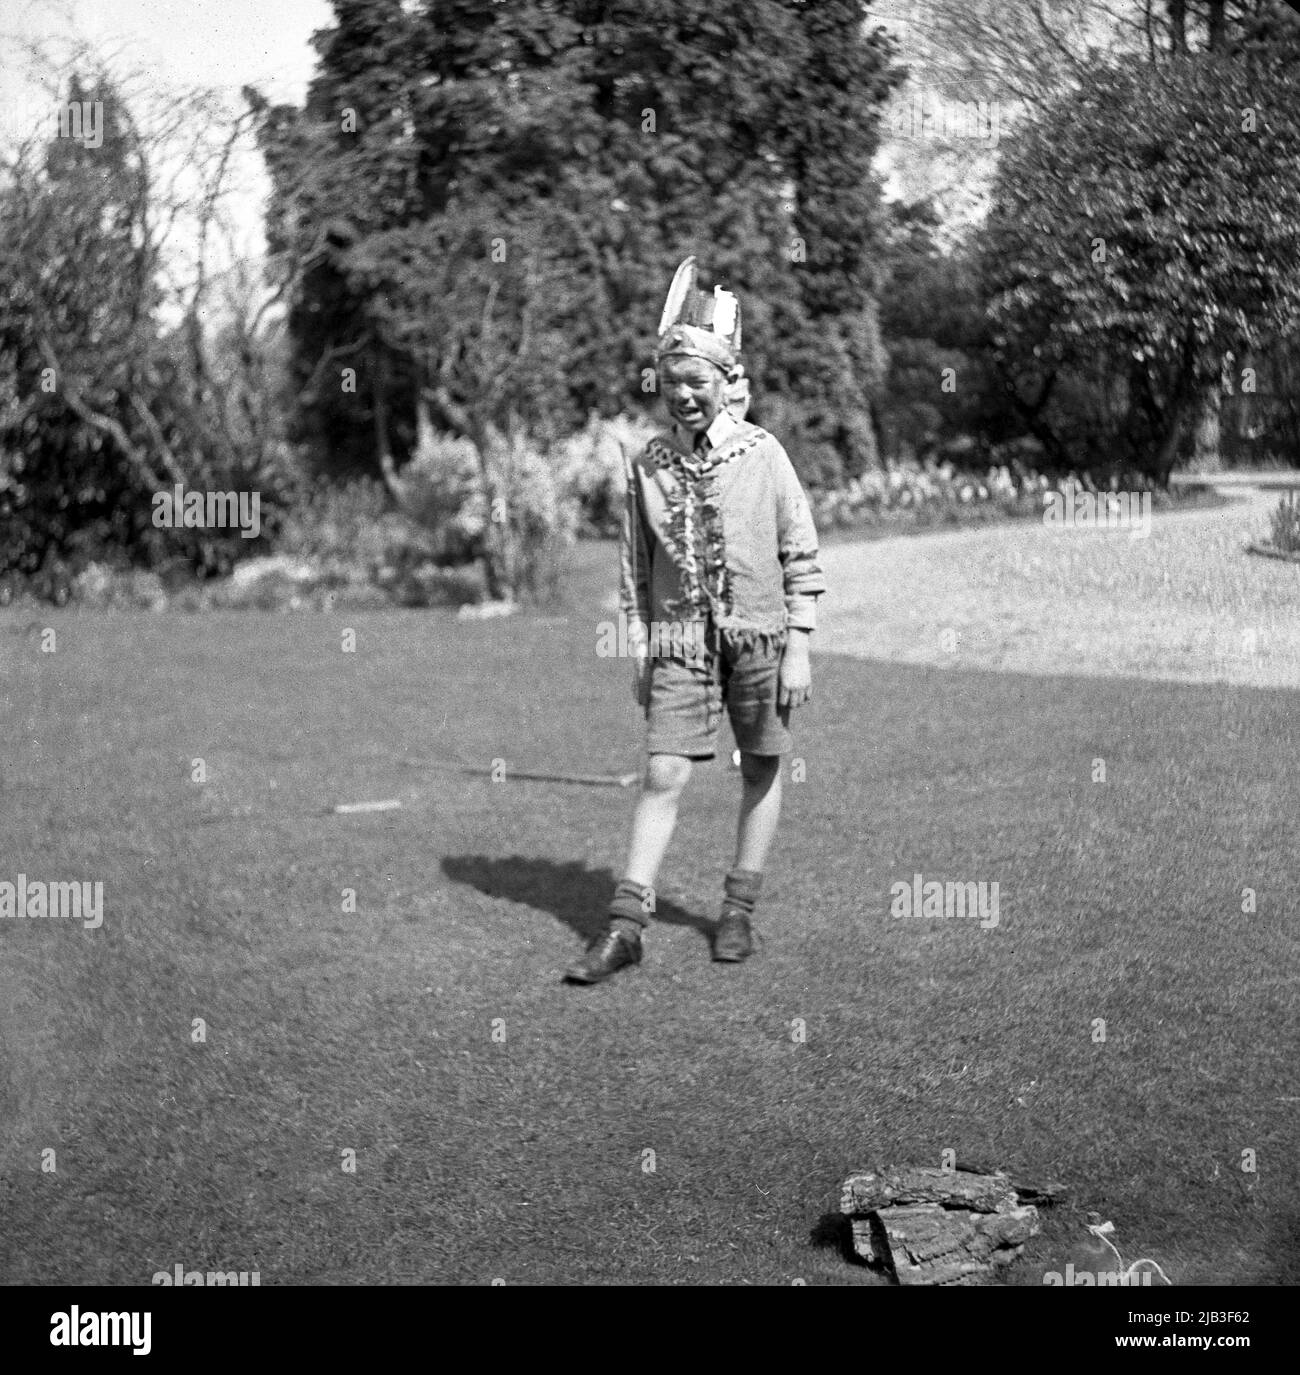 1950s, historisch, draußen im Garten, ein Junge, der auf dem Gras steht, spielt, vorgibt, gebürtig oder ein roter inder zu sein, mit einer Kostümjacke, einer Schleife auf der Schulter, einem Federhut und einem gemalten Gesicht, England, Großbritannien. In Großbritannien nach dem Krieg war das Spielen von Cowboys und indianern ein beliebtes Spiel für junge Kinder. Stockfoto